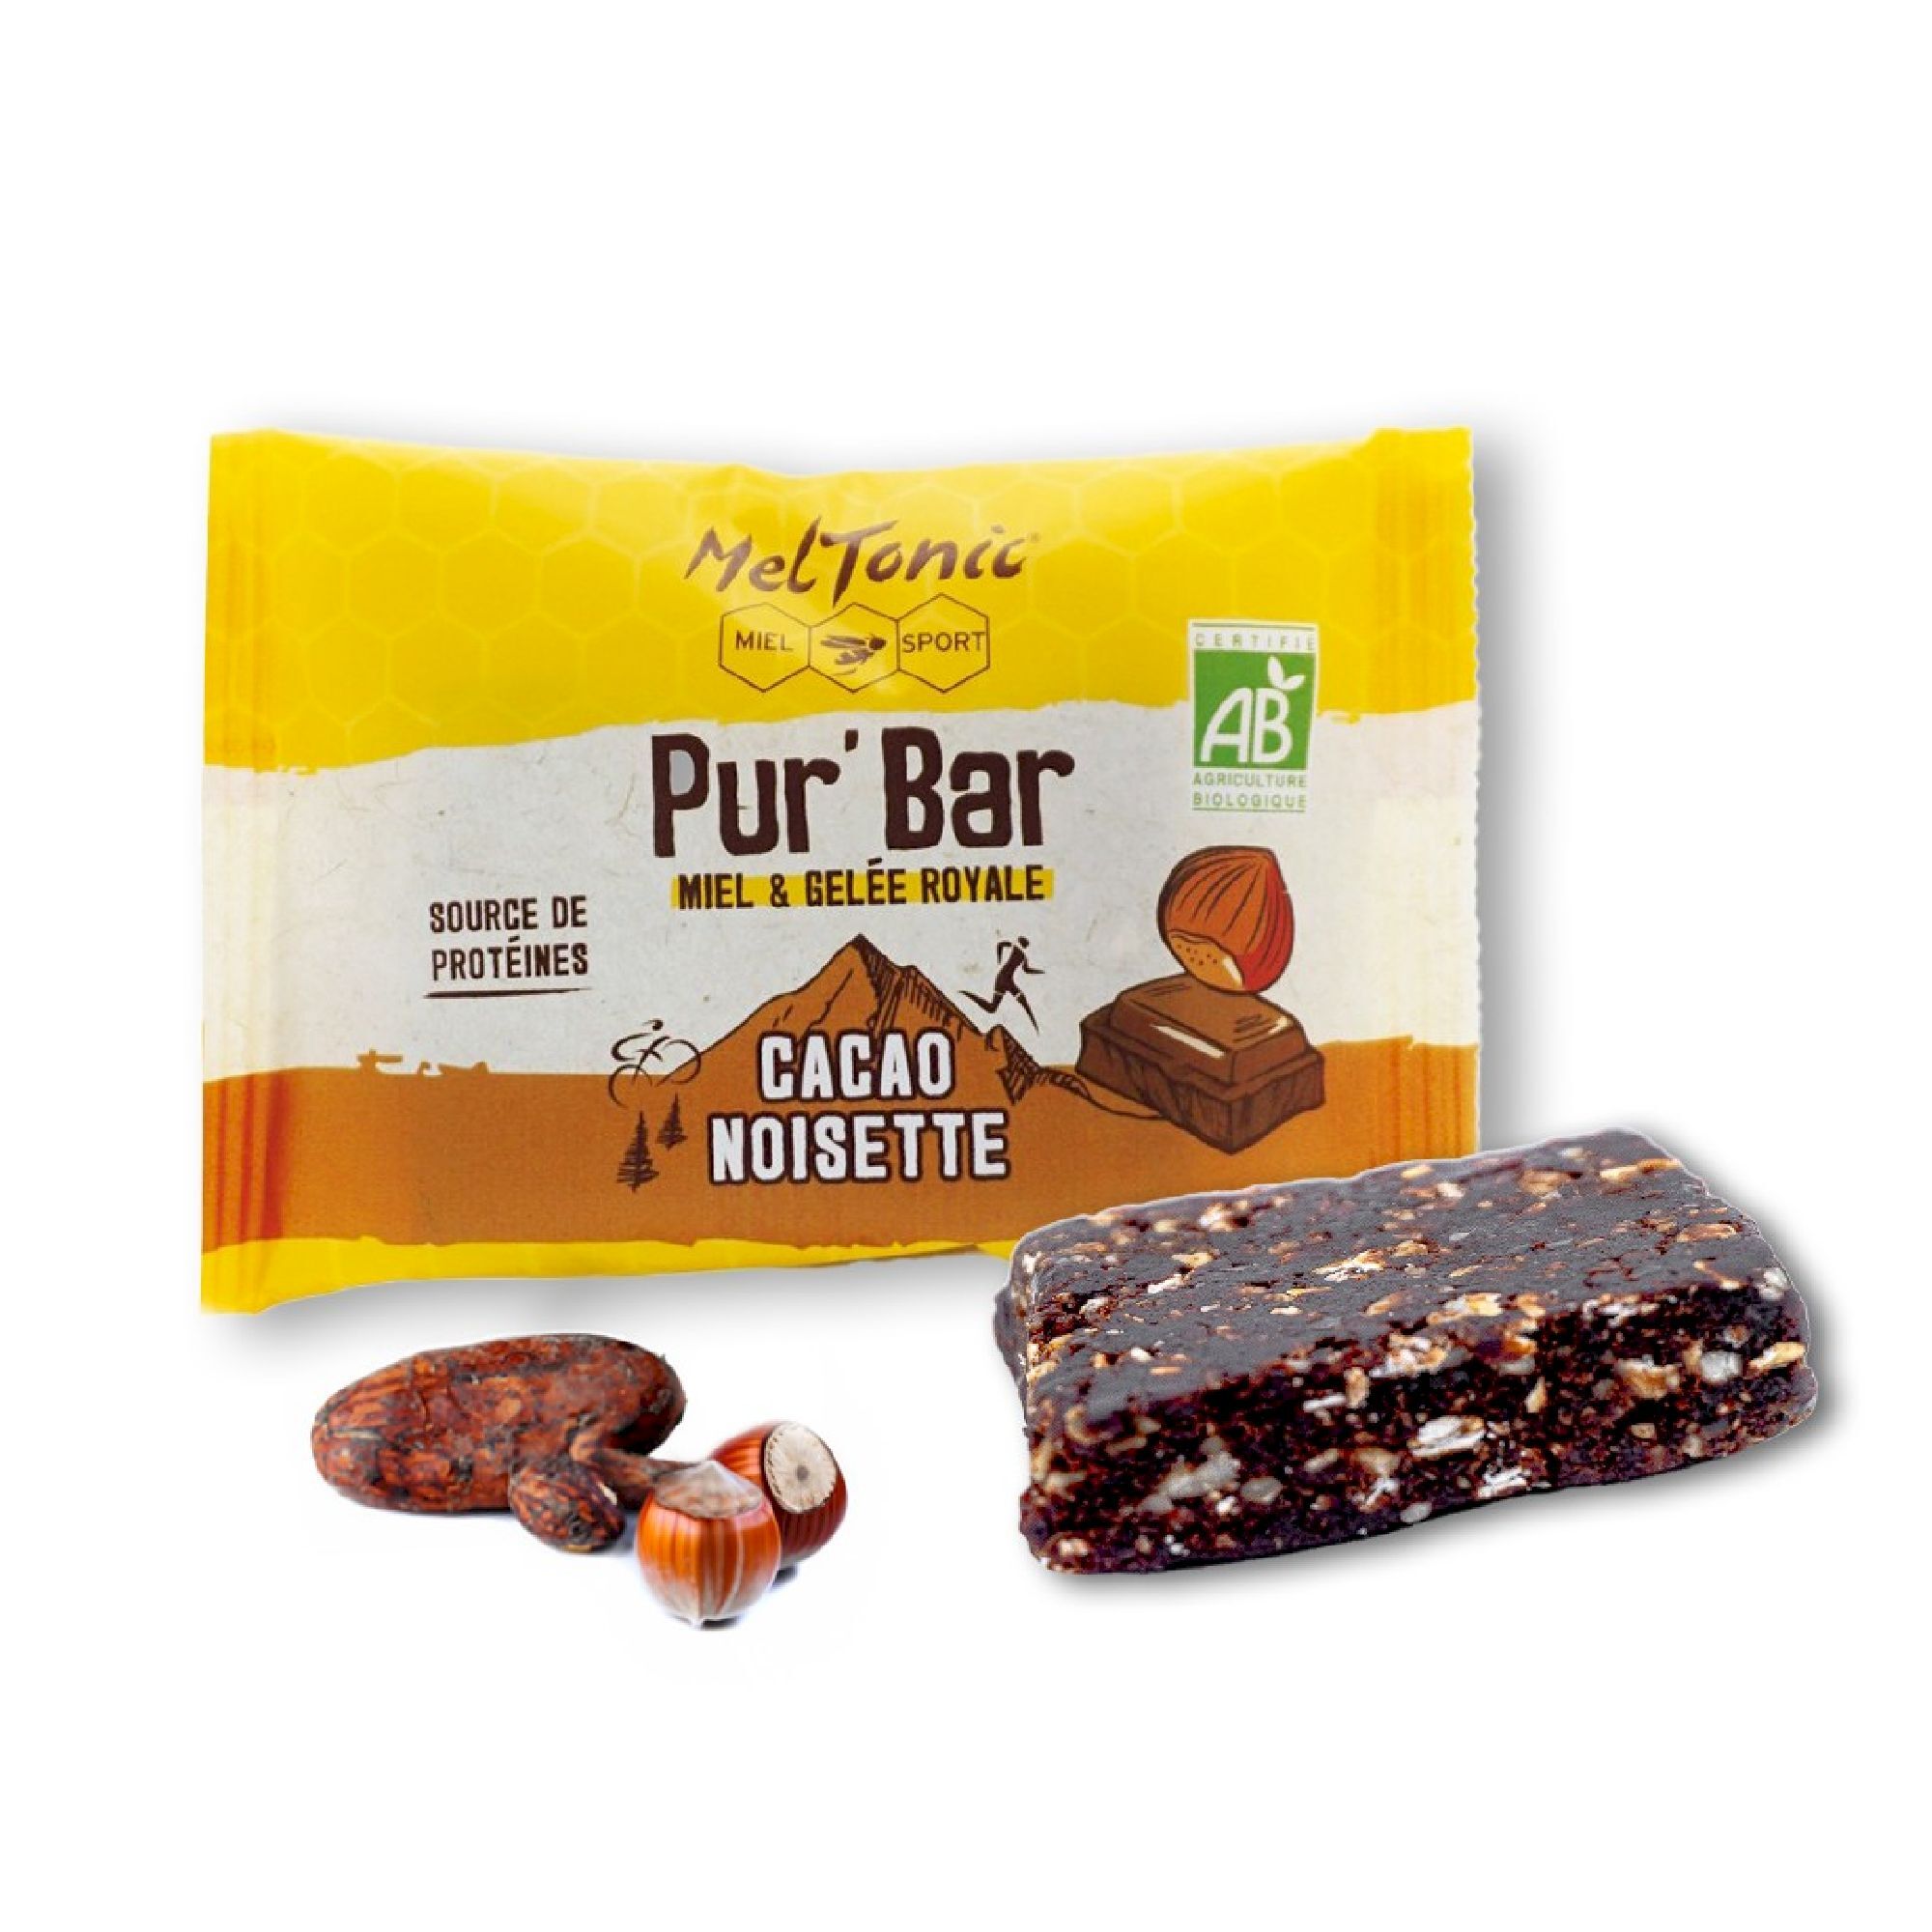 Meltonic Pur' Bar Bio Cacao Noisette Miel & Gelée Royale - Barre énergétique | Hardloop